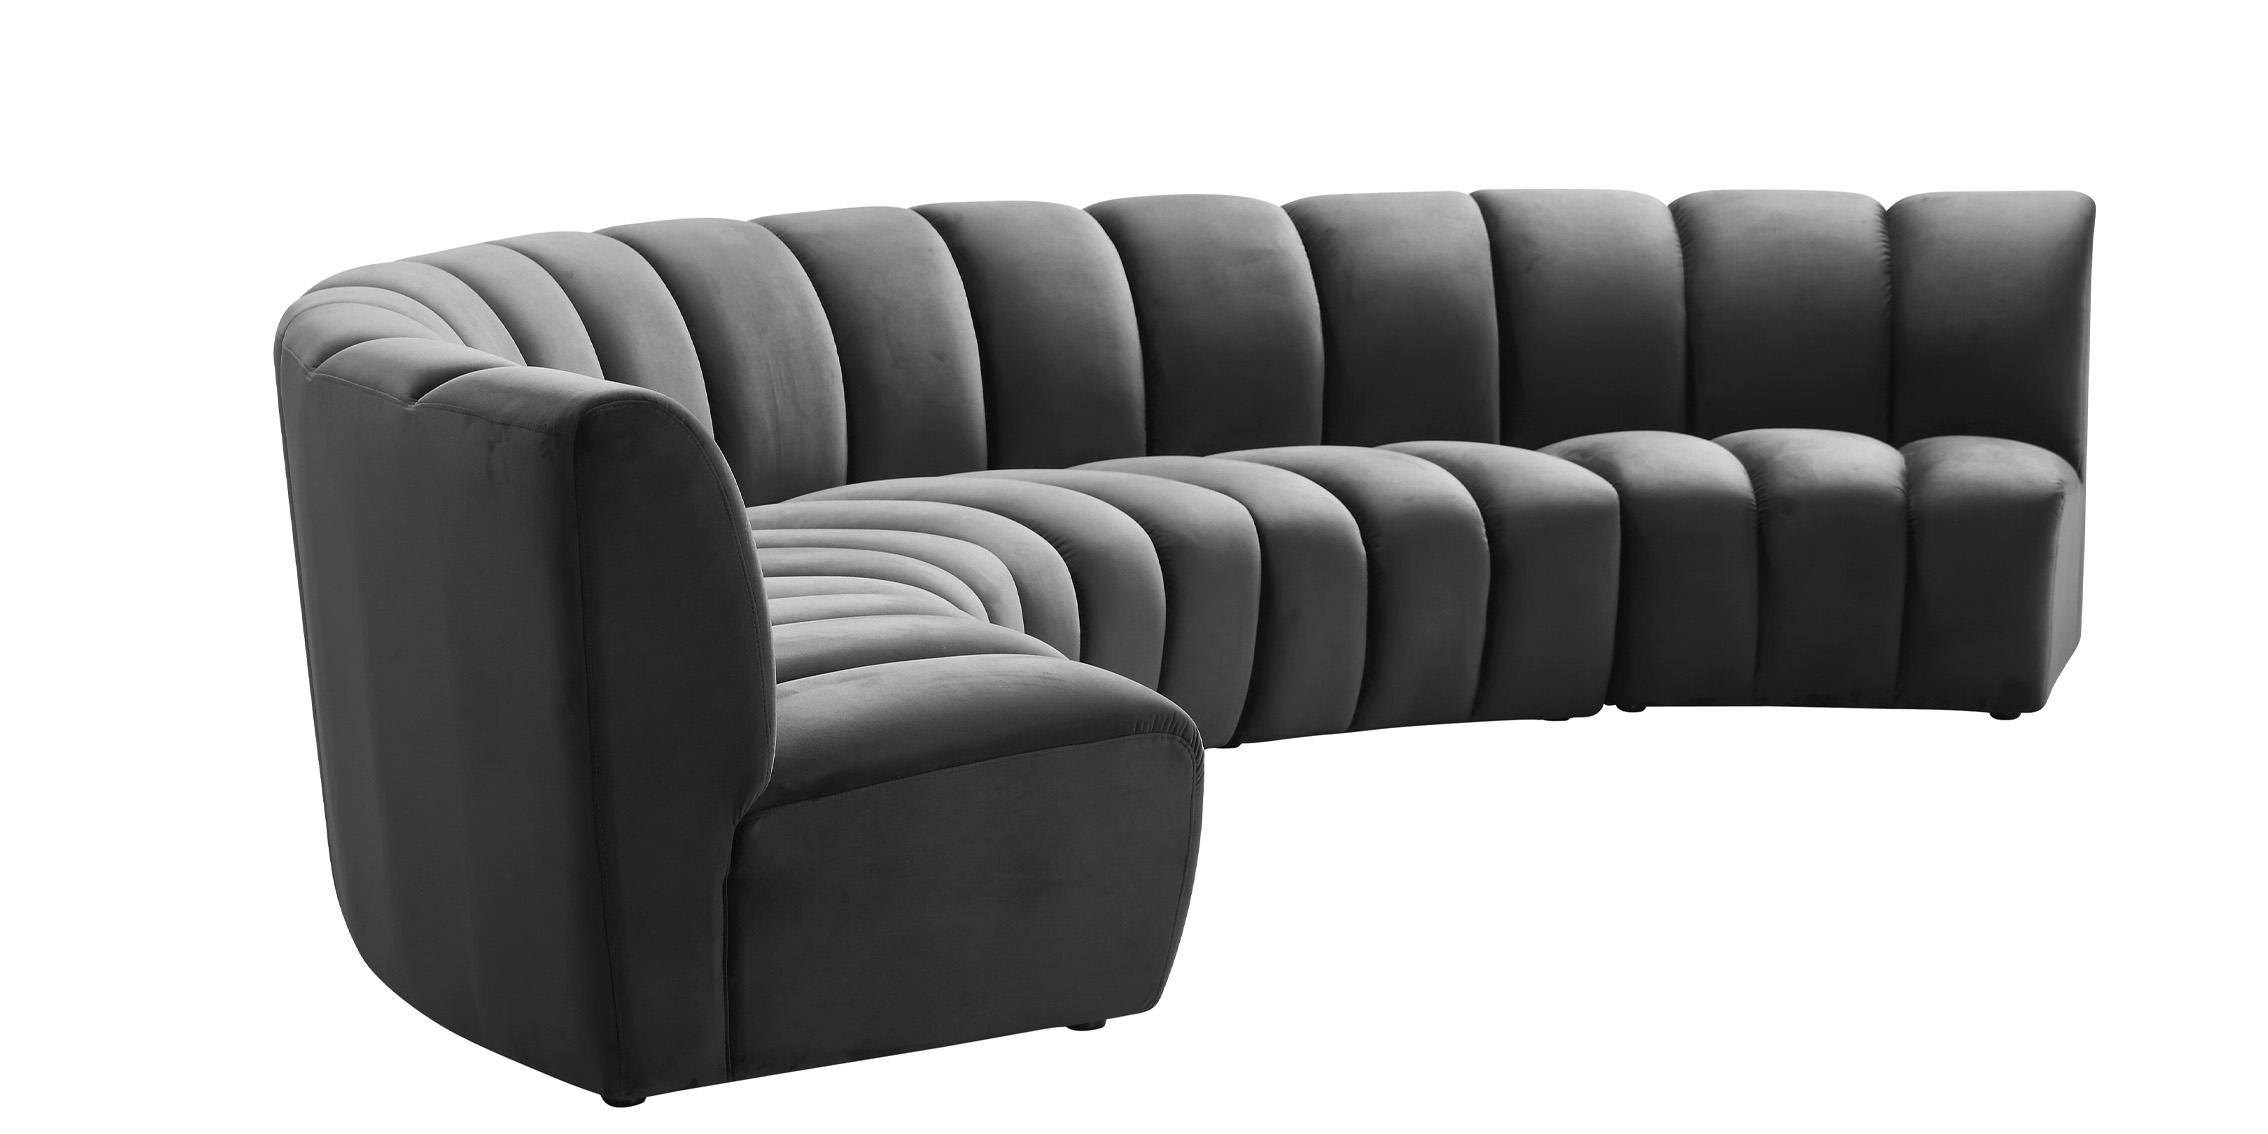 

    
638Grey-4PC Meridian Furniture Modular Sectional Sofa
